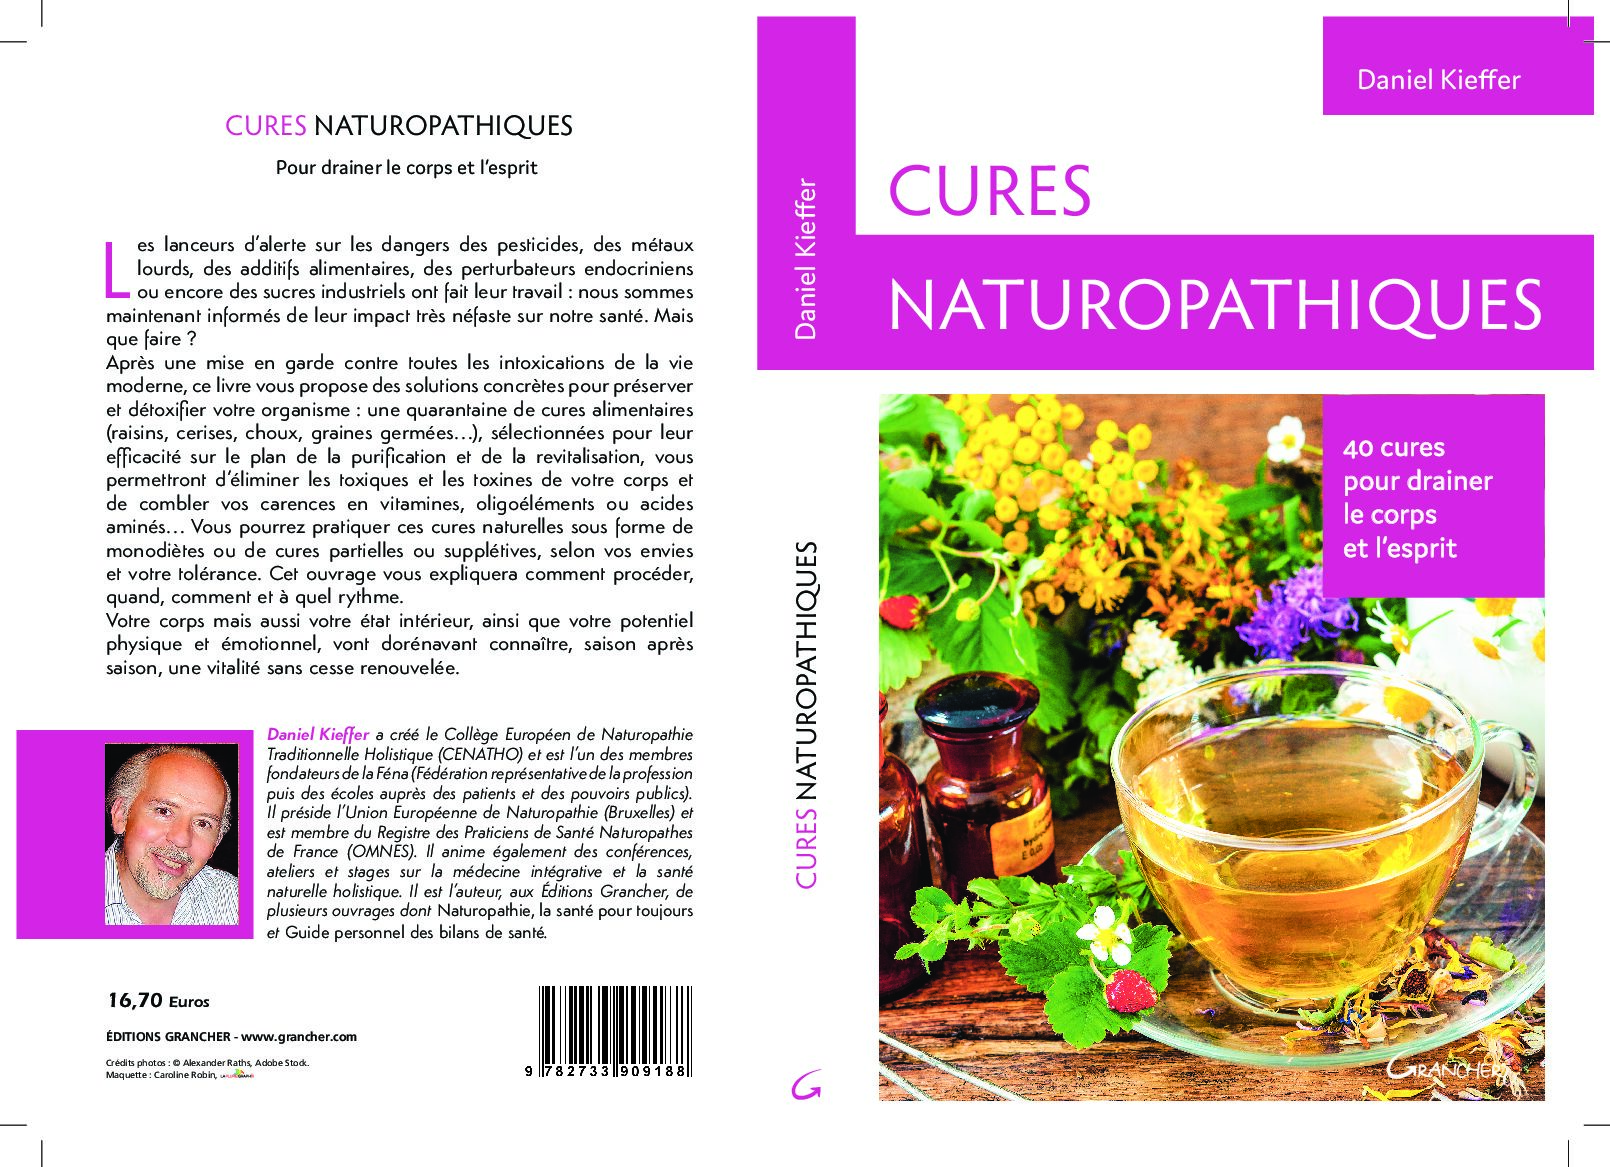 Extrait du livre « Cures naturopathiques »